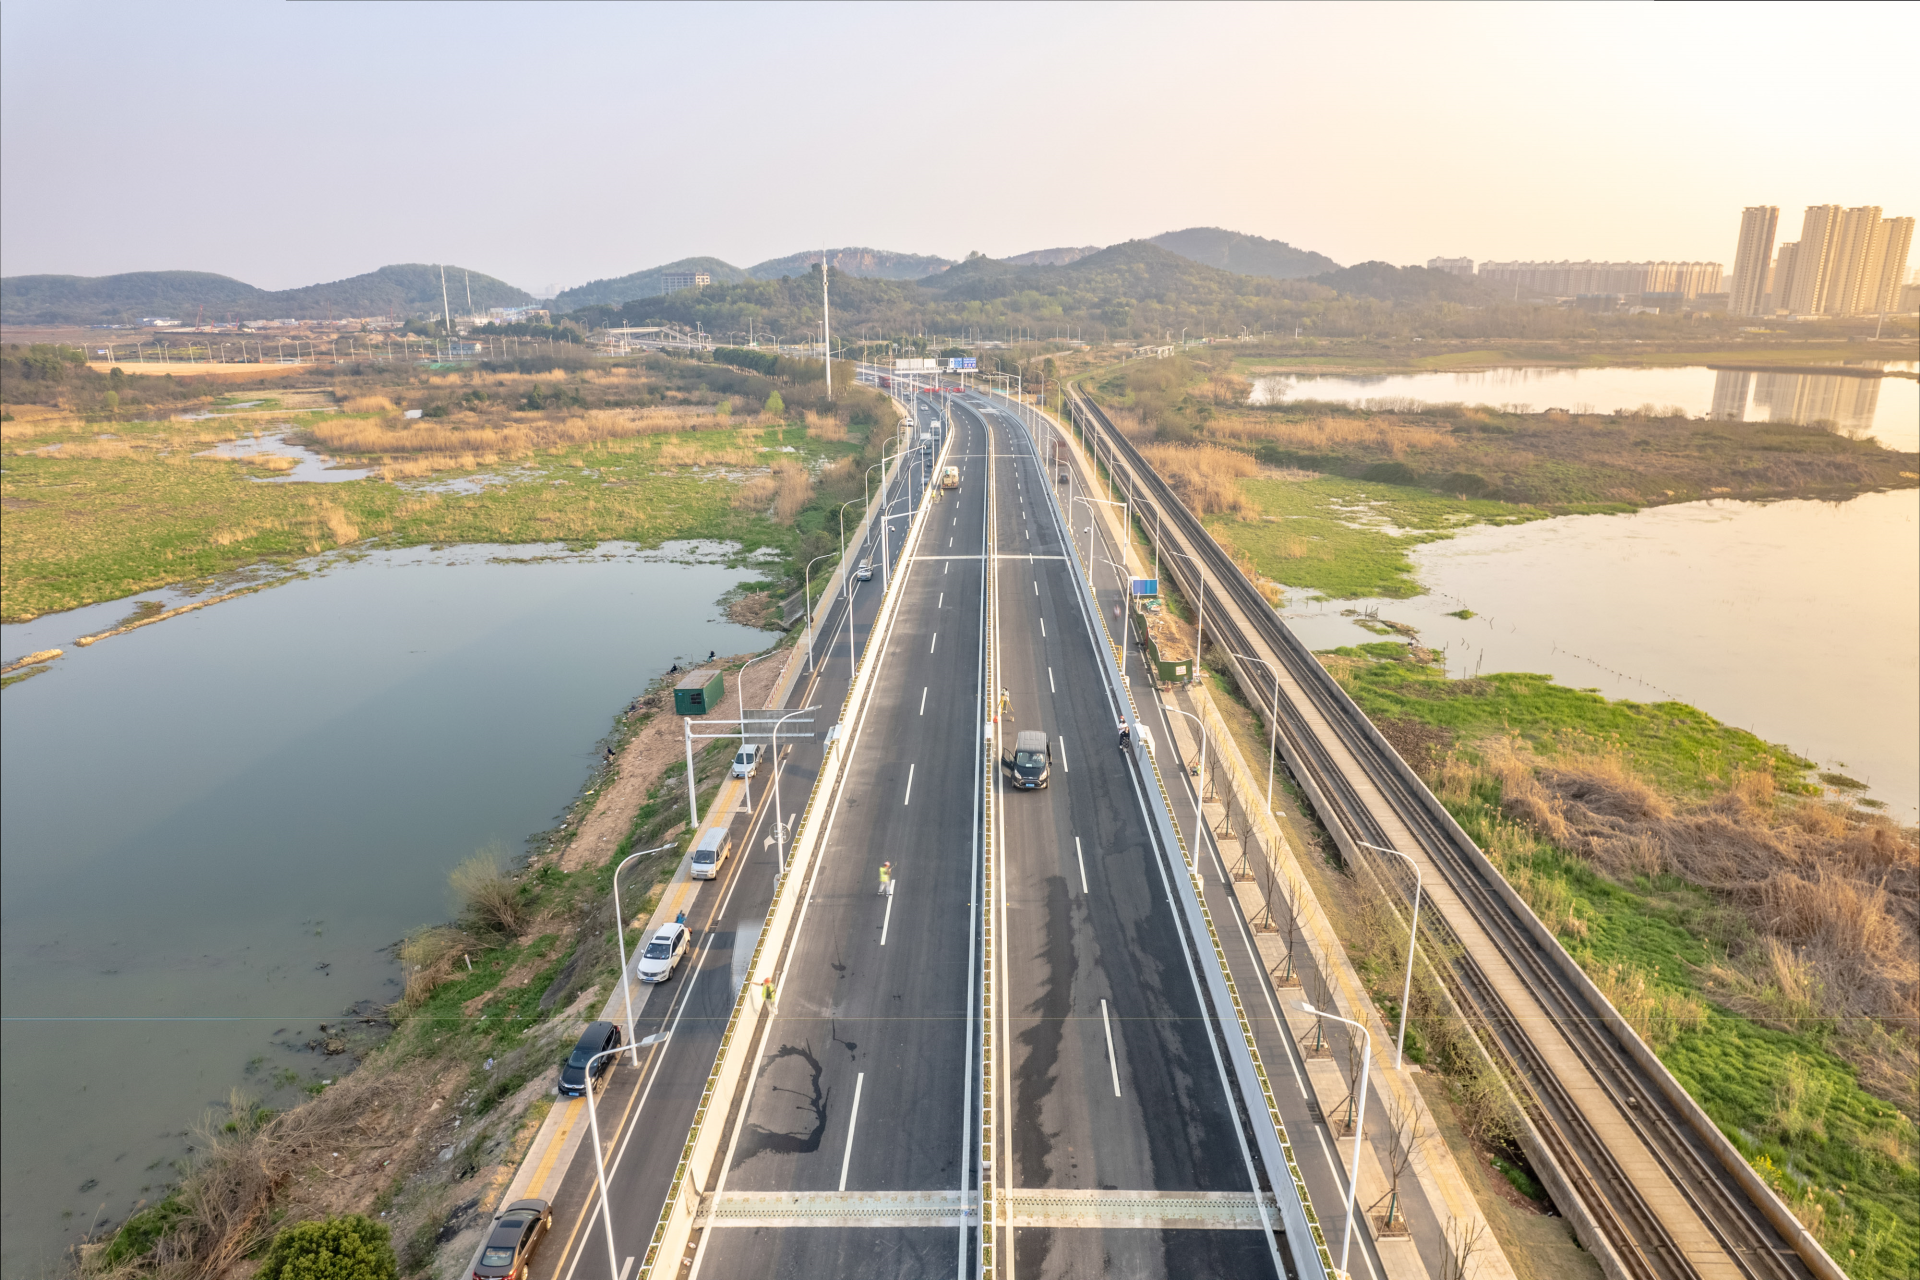 据介绍,车谷大道通车后,武汉经开区将打造车谷大道产业创新发展轴,将